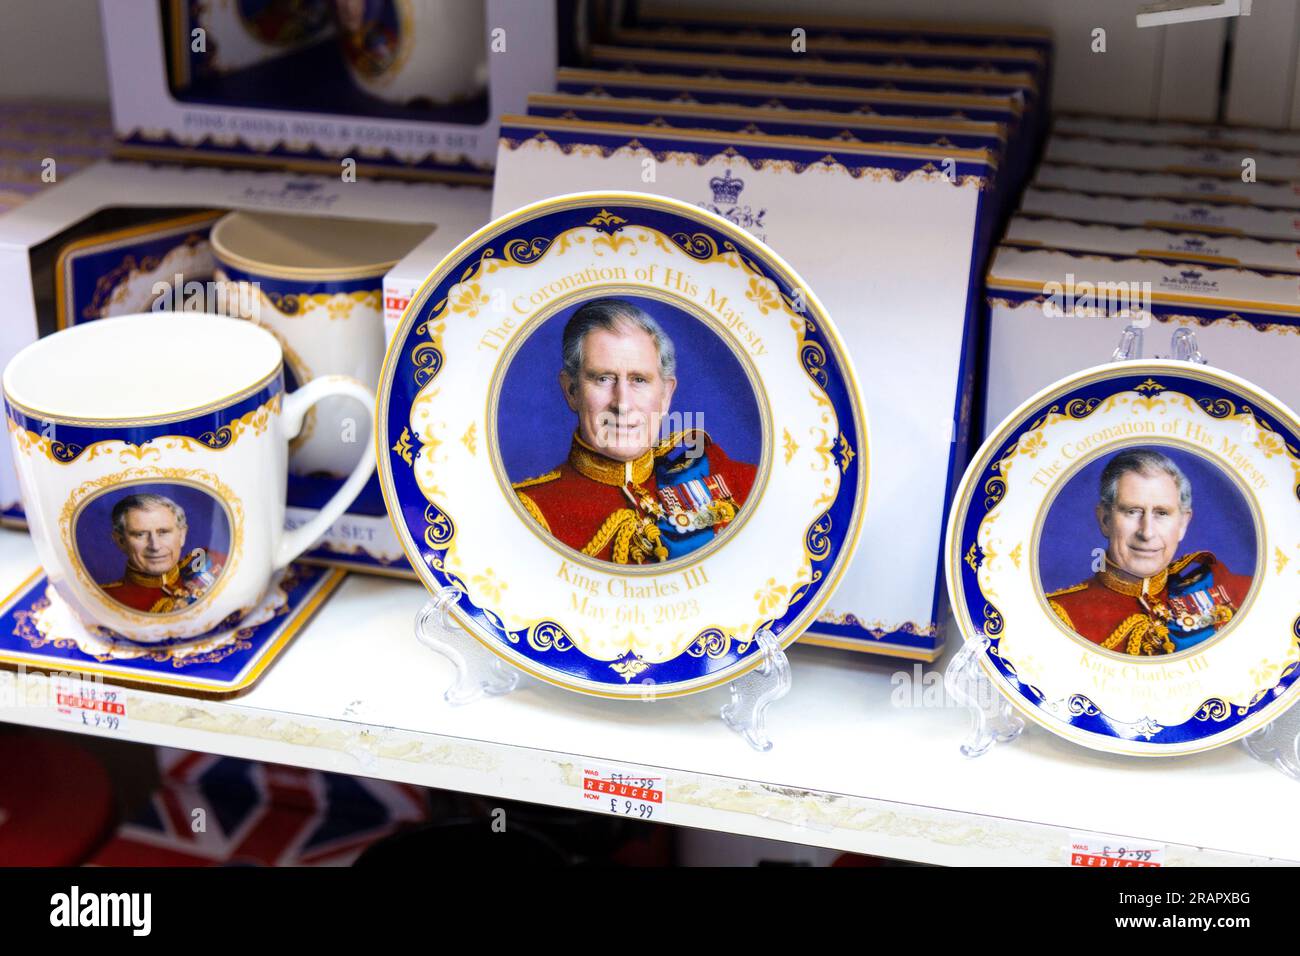 Piatti di porcellana e tazze ricordo di re Carlo in un negozio di souvenir Foto Stock